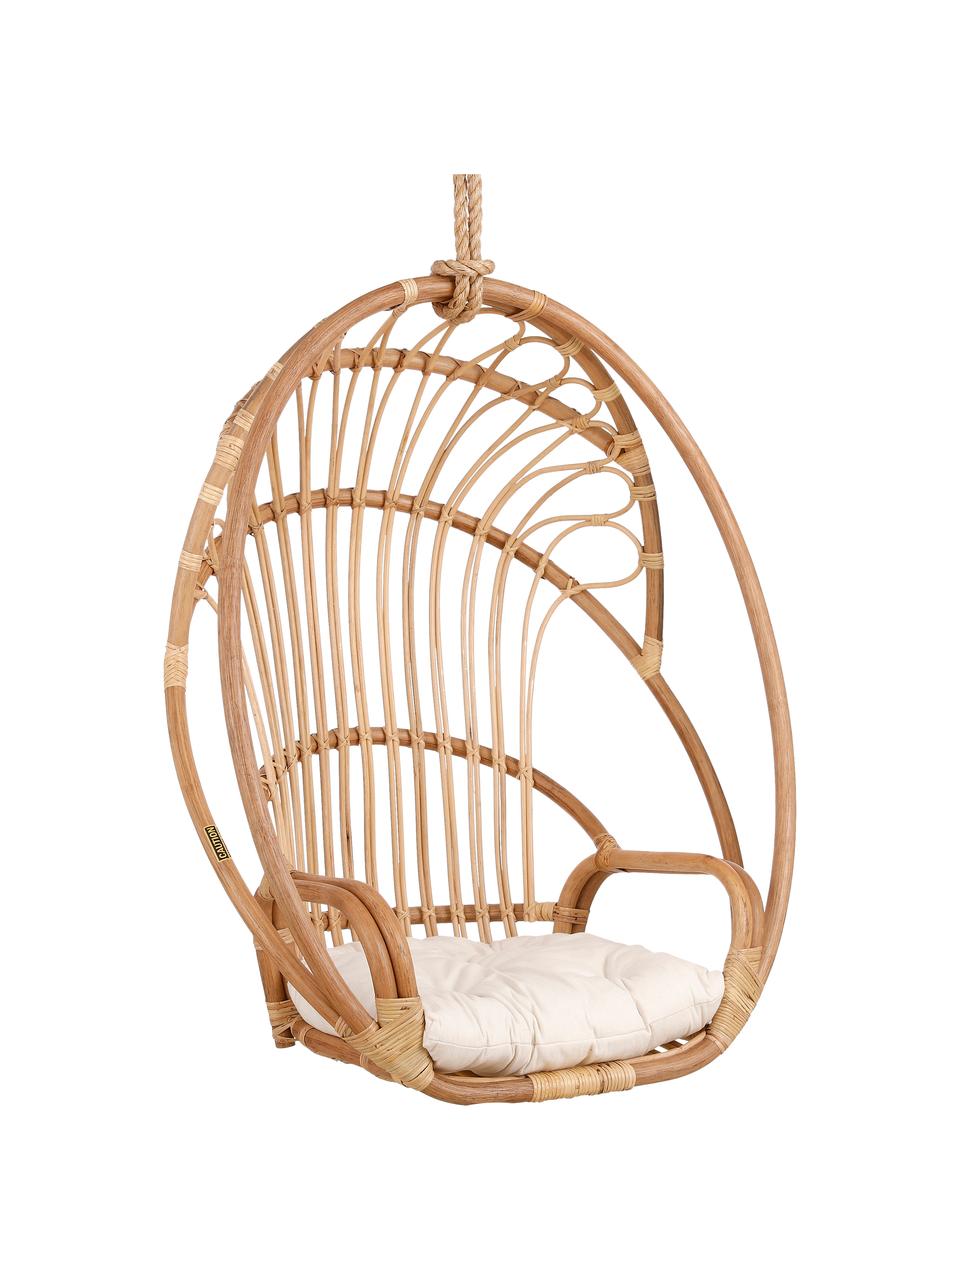 Cuscino per sedia sospesa Cuscino per sedia sospesa in rattan sedia sospesa per esterni Motivo Floreale 1, 55 x 45 cm 